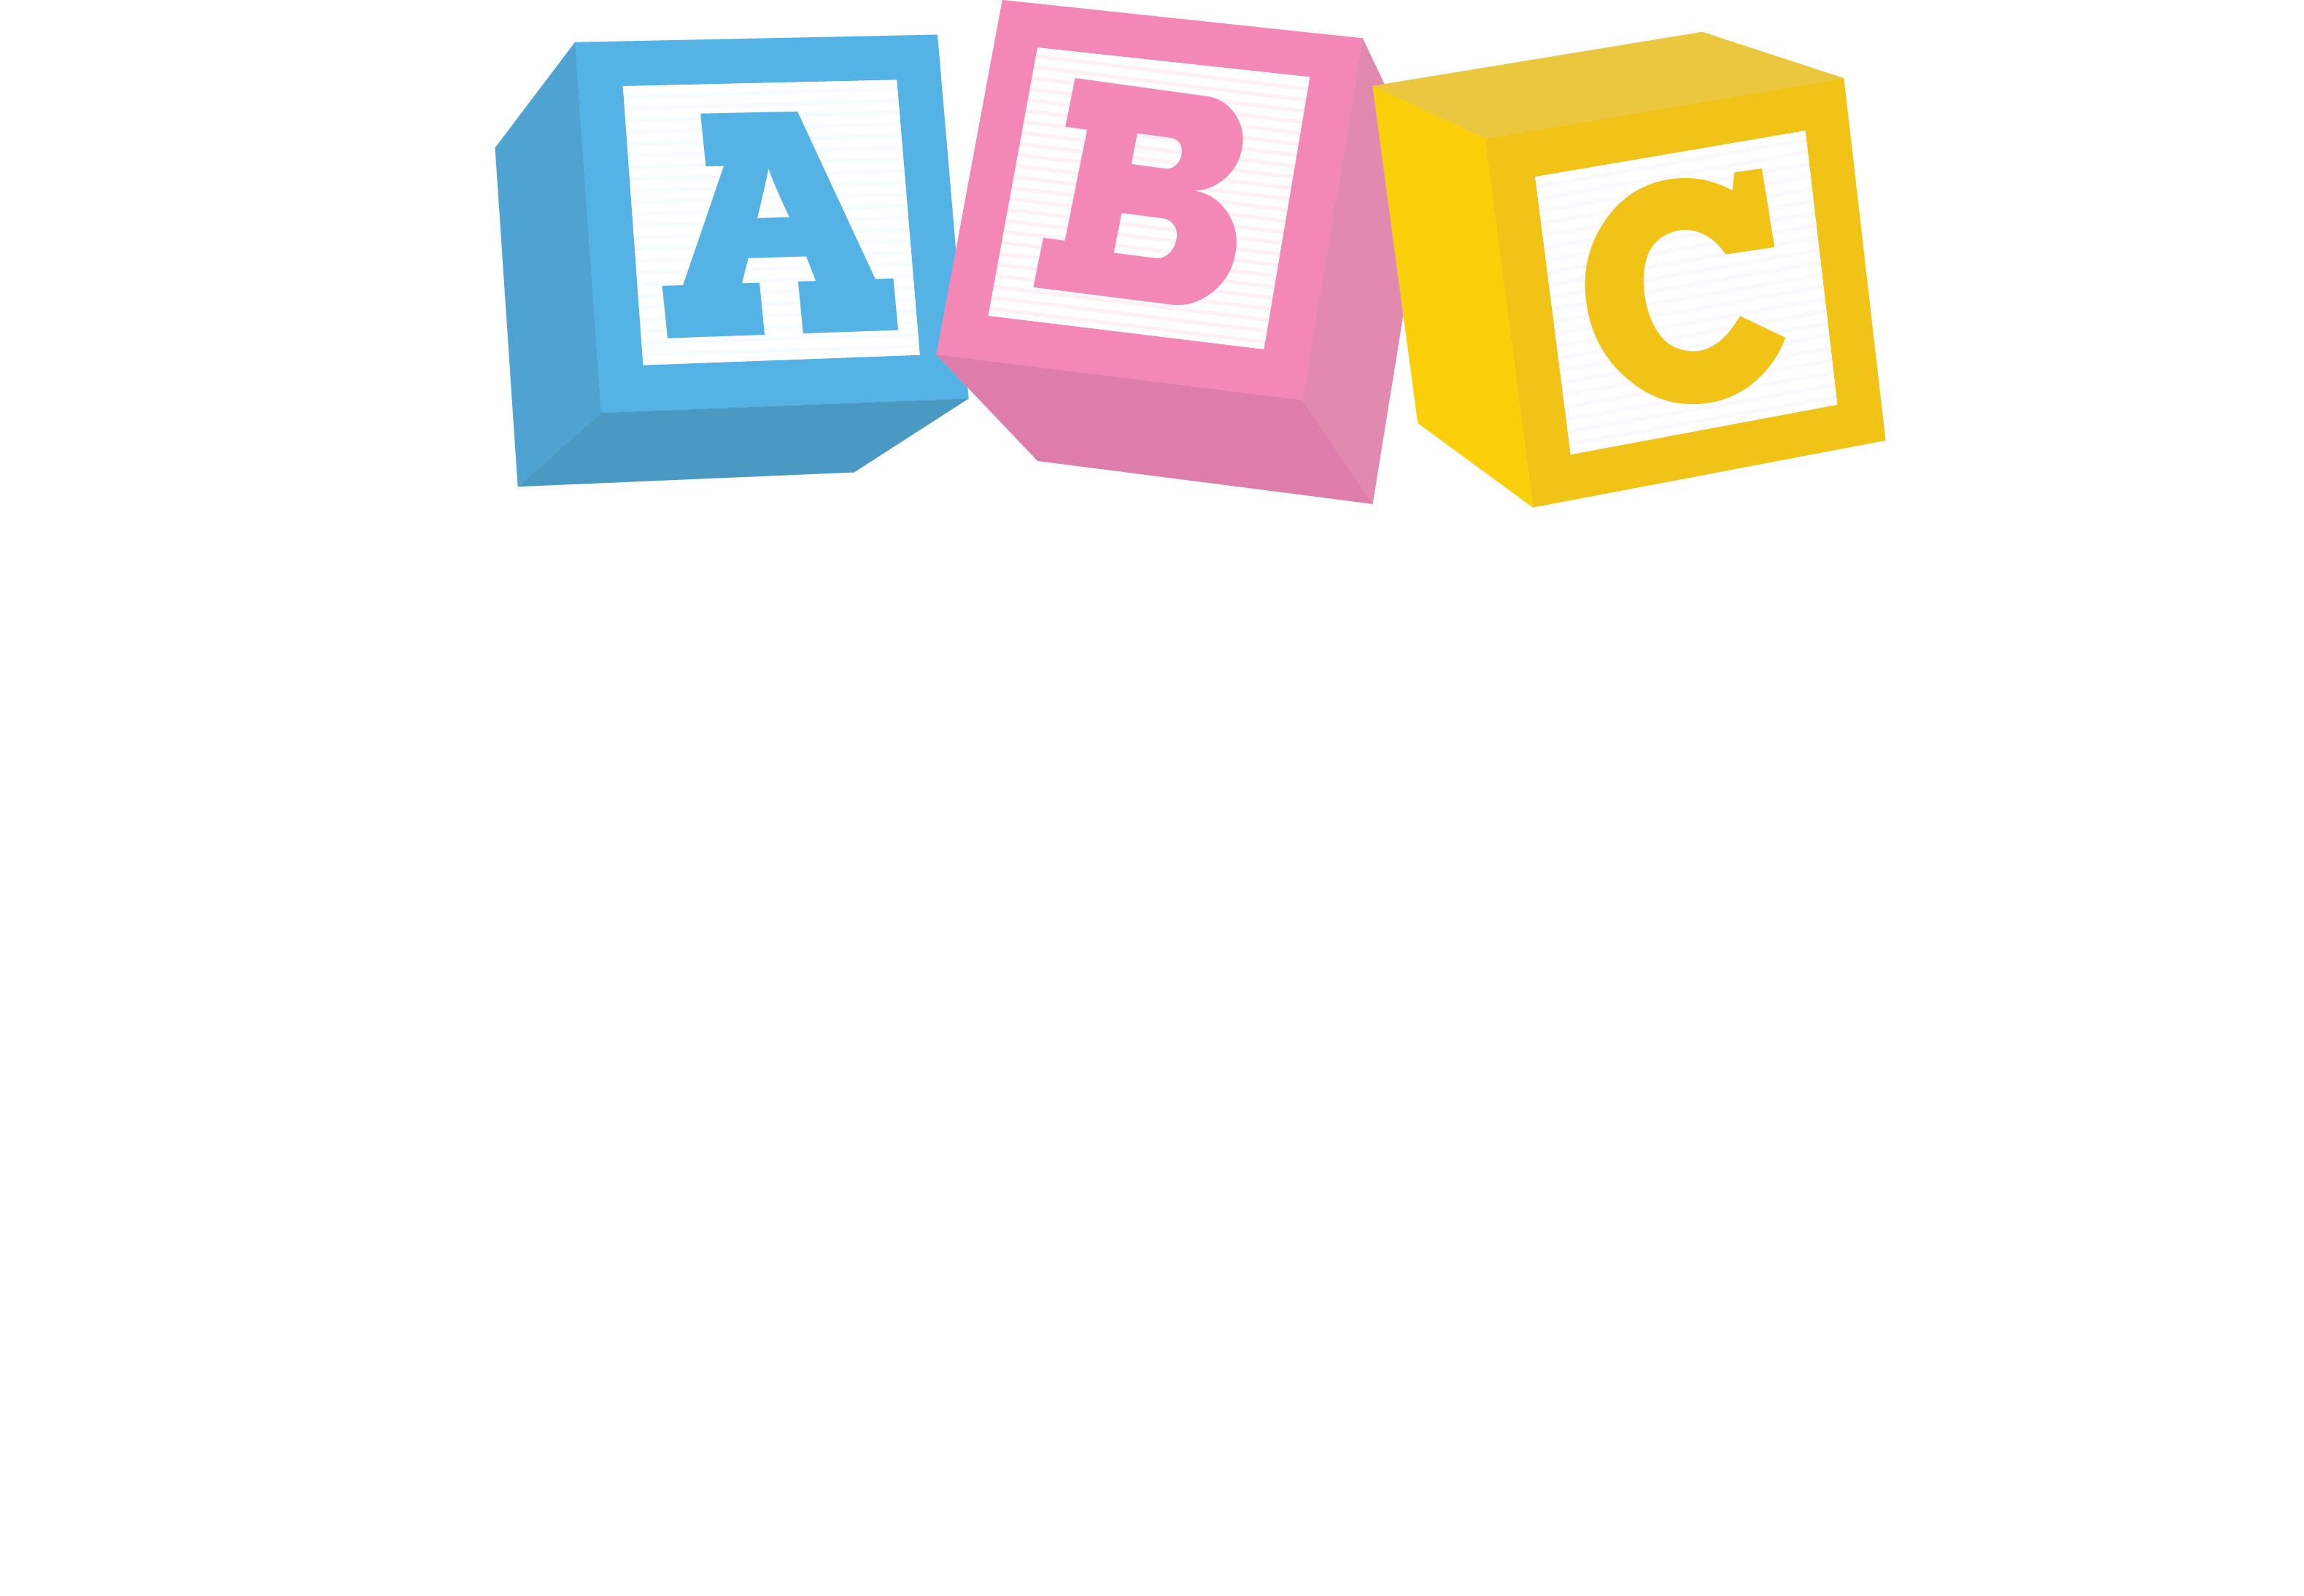 ABC Law Centers 